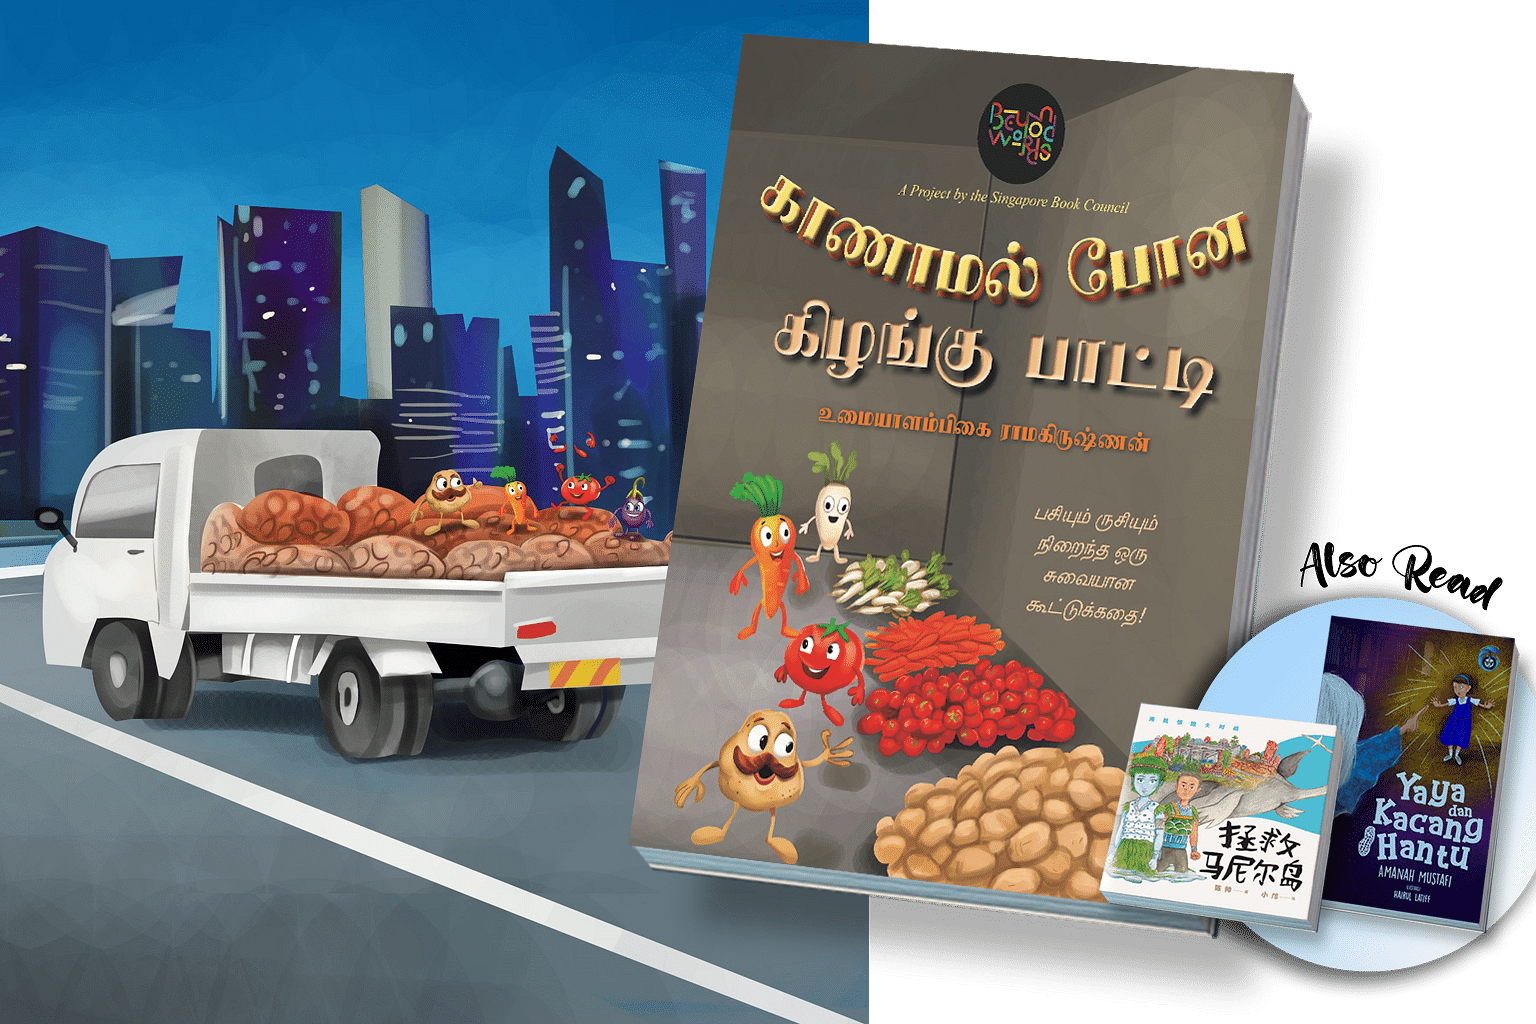 children's story books, kaanamal pona kilangu paatti in tamil, saving mani island in chinese and yaya dan kacang hantu in malay